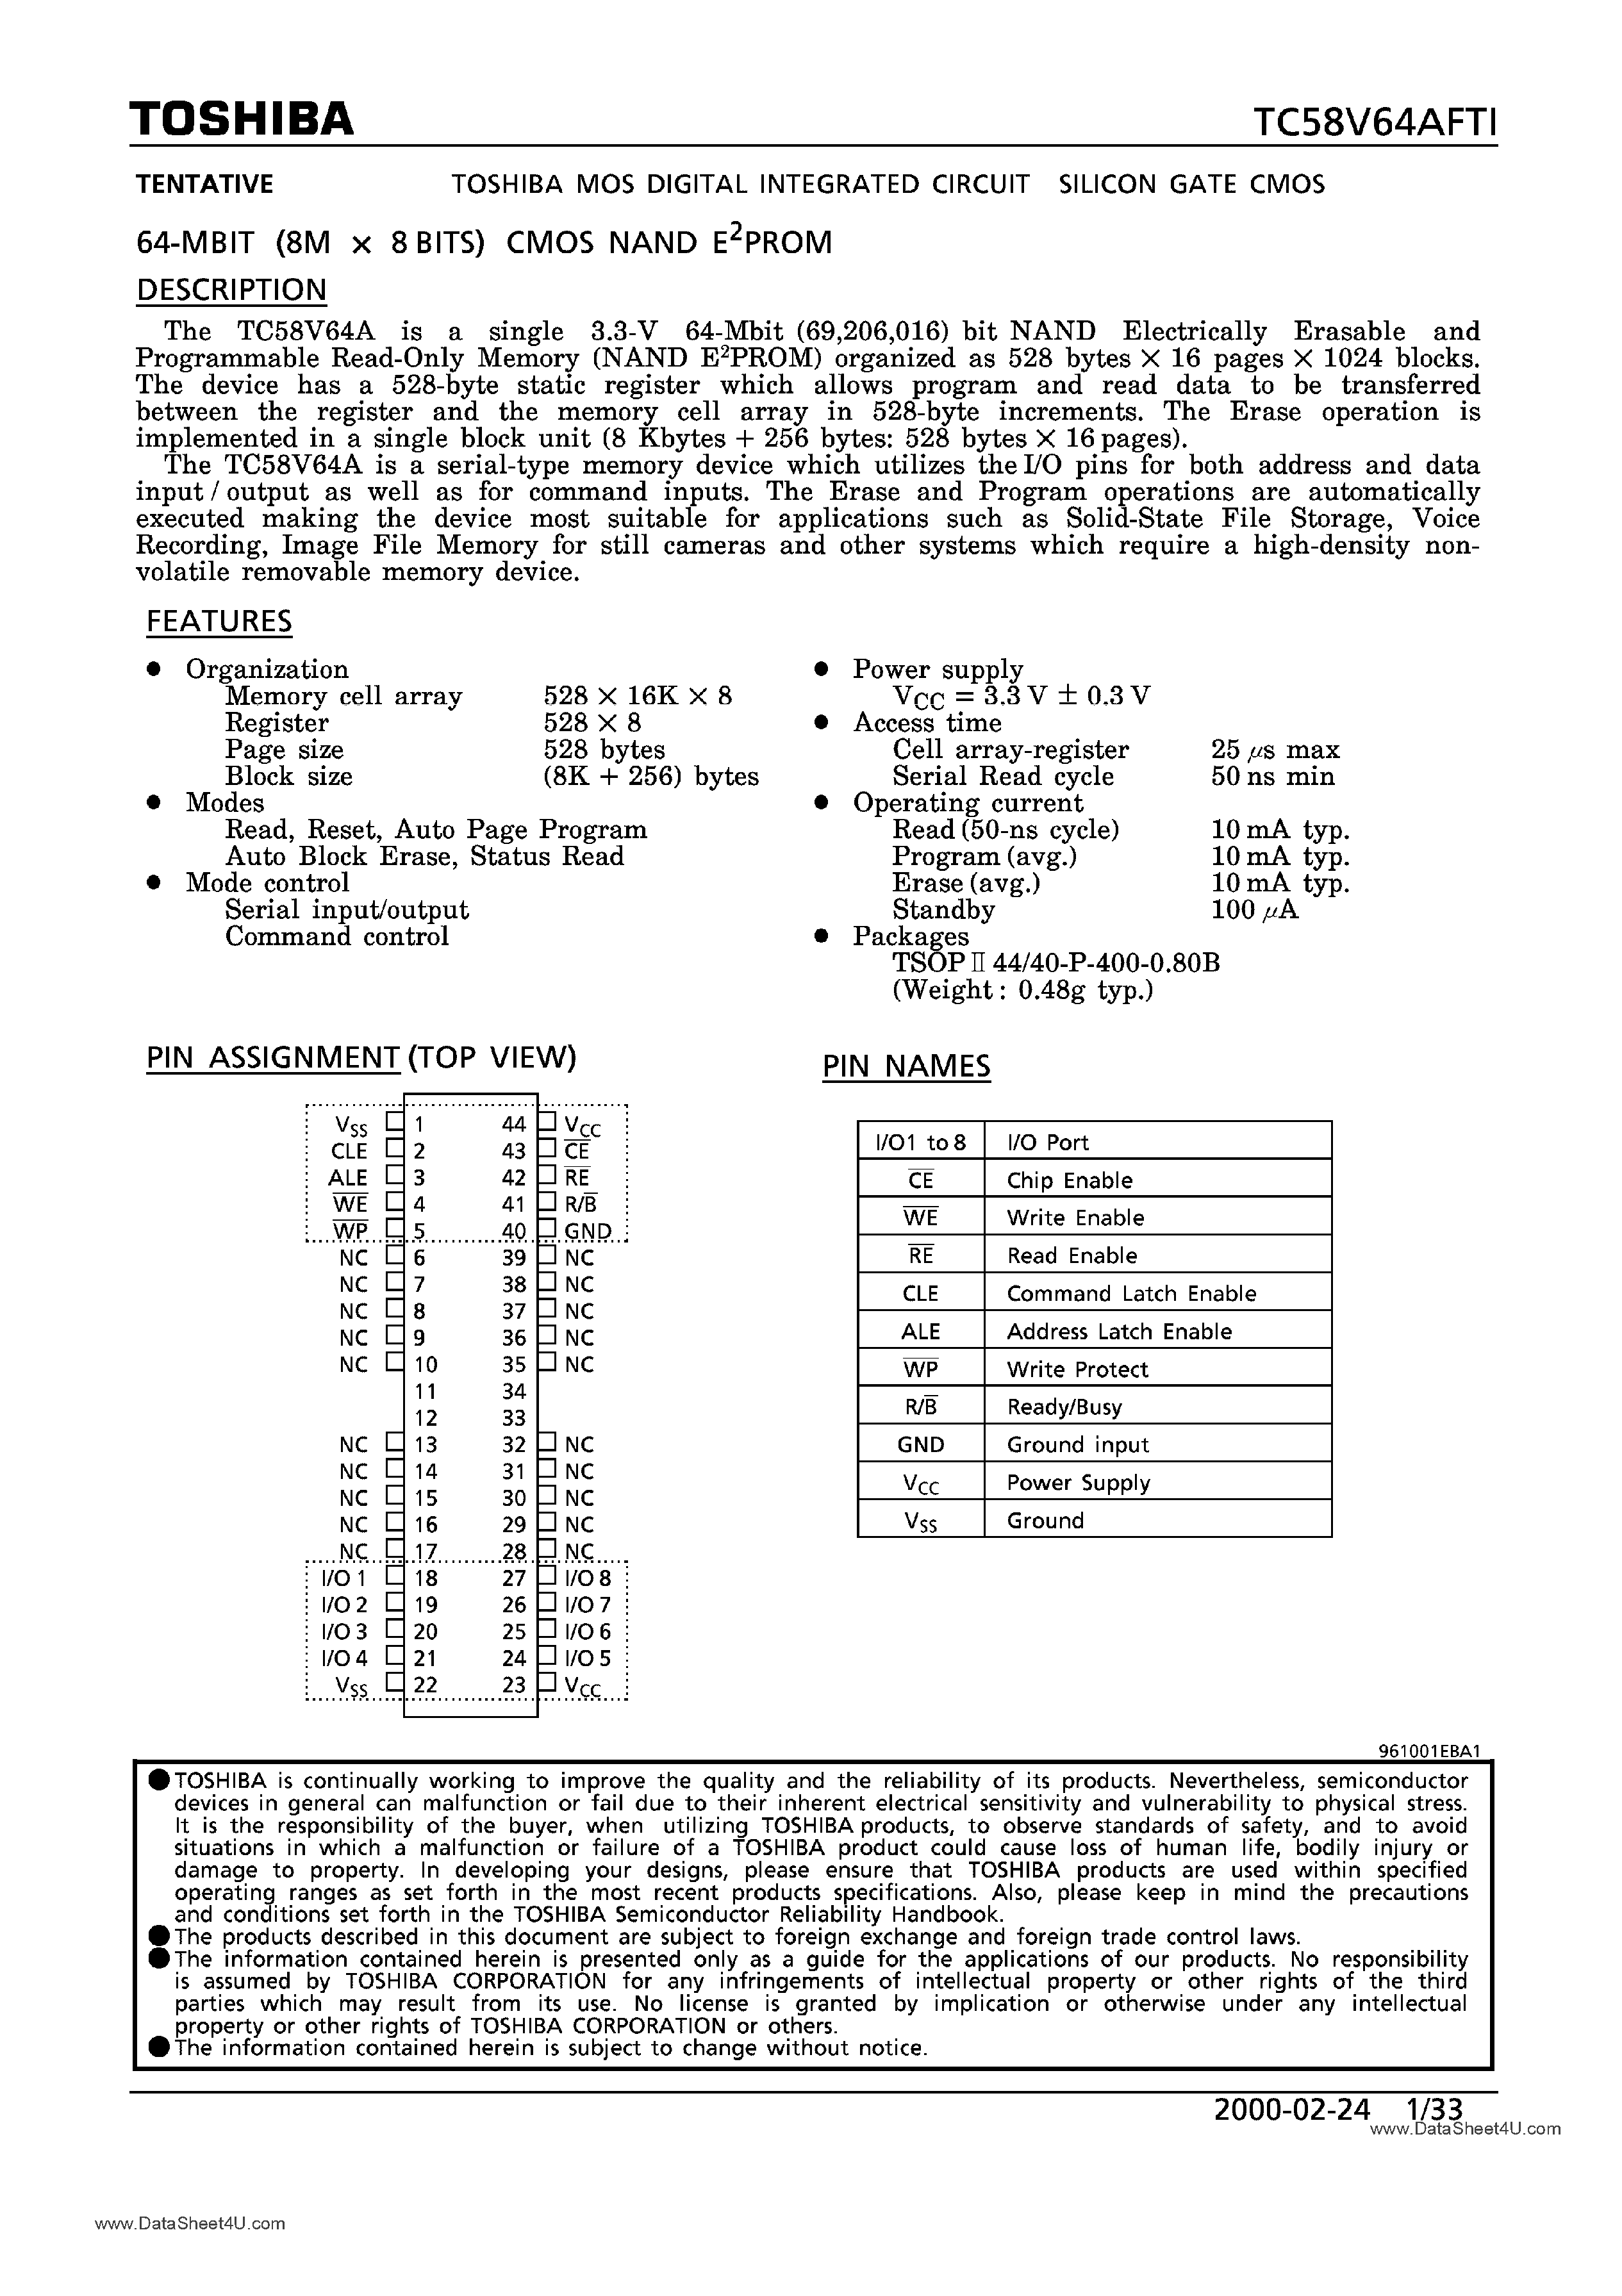 Даташит TC58V64AFTI - 64M-Bit CMOS NAND EPROM страница 1